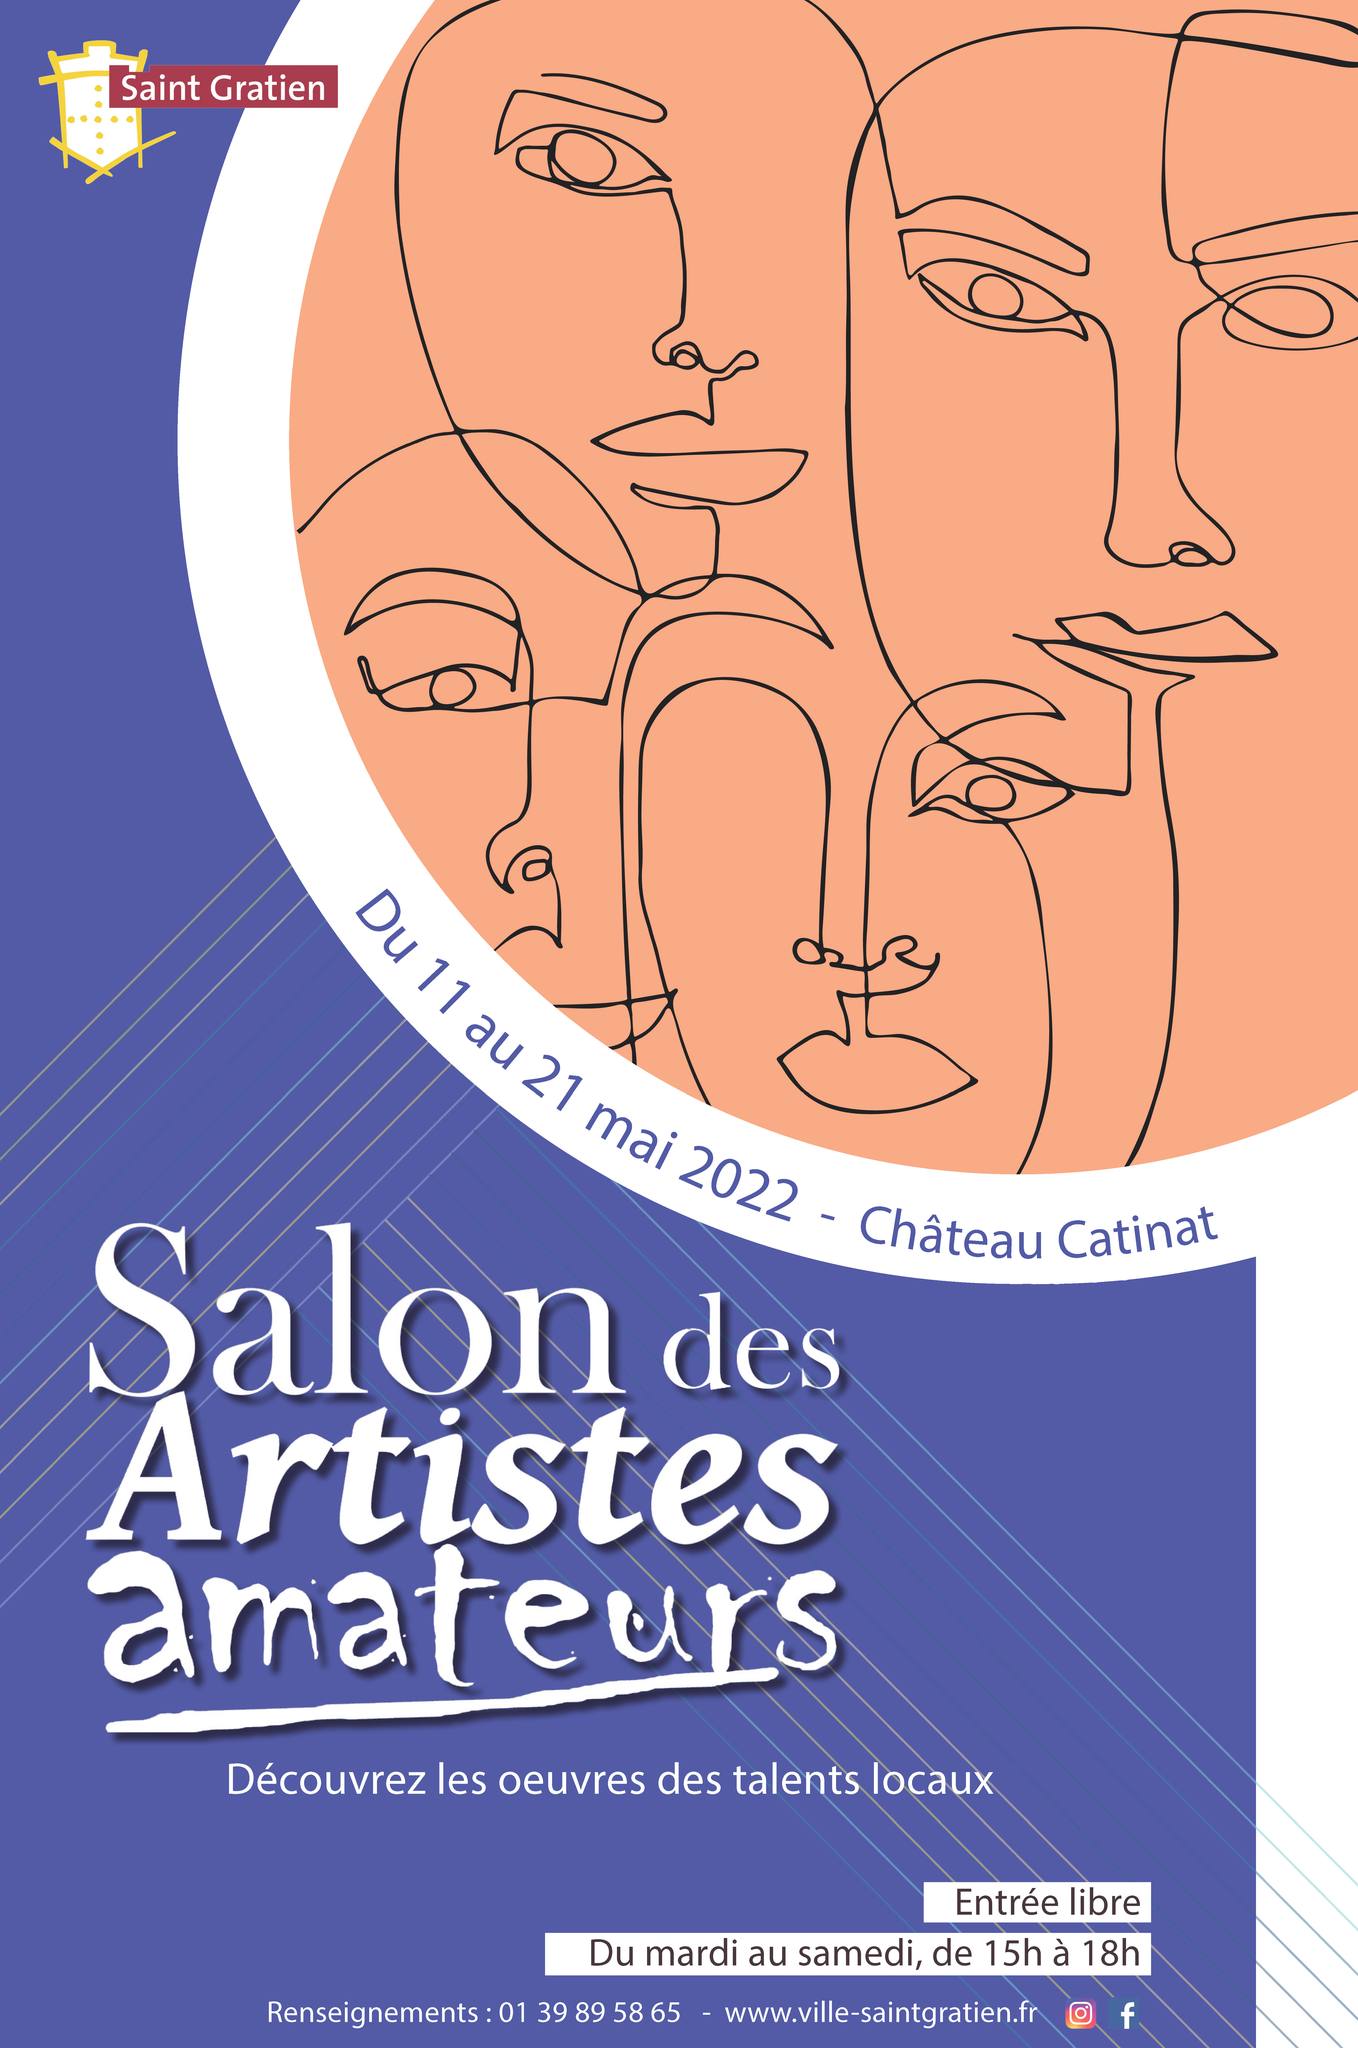 Salon des artistes amateurs Saint-Gratien